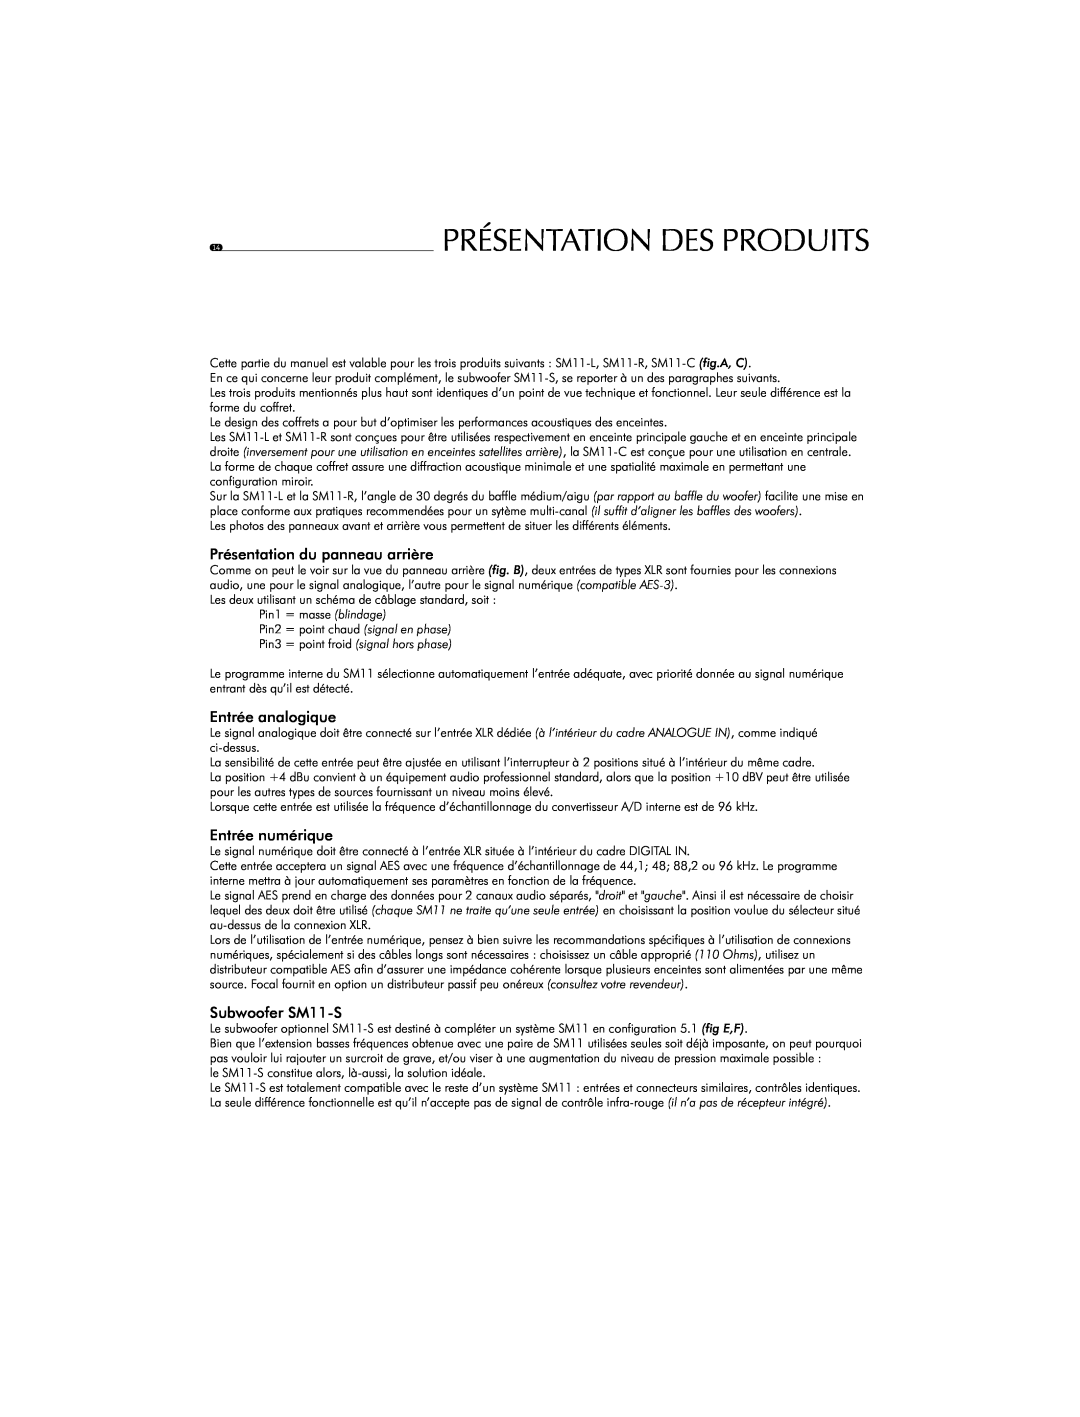 Focal SM11 user manual Présentation Des Produits, Présentation du panneau arrière, Entrée analogique, Entrée numérique 